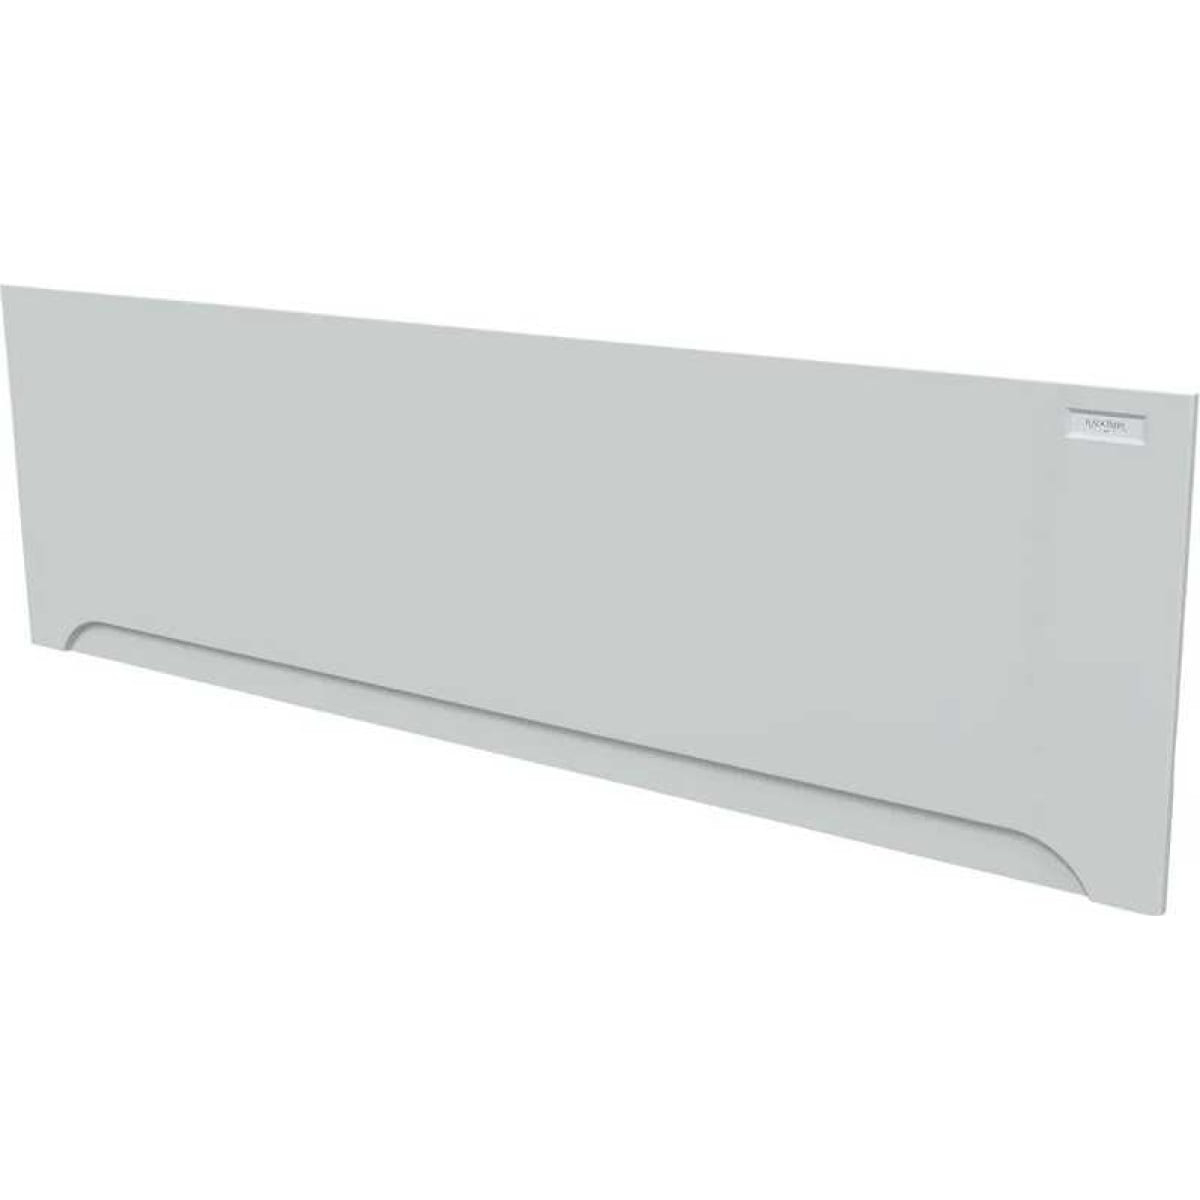 Фронтальная панель для ванны Radomir Прованс-вальс 180x80 см, цвет белый